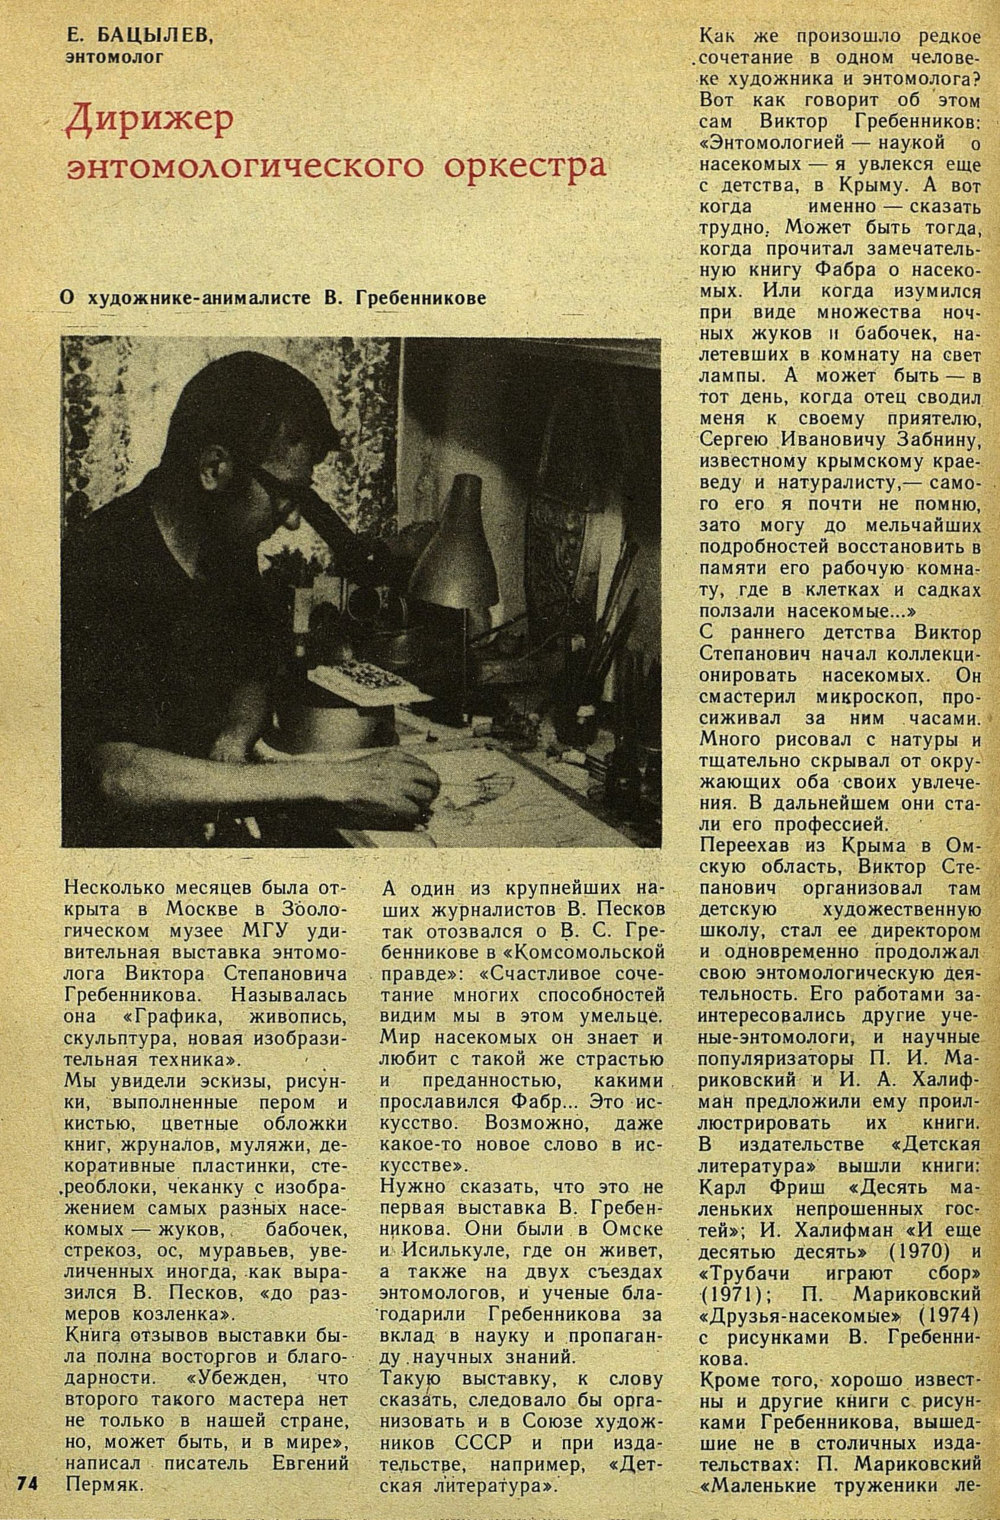 Дирижер энтомологического оркестра. Е. Бацылев. Детская литература, 1975, №9 (117), с.74-78. Фотокопия №1